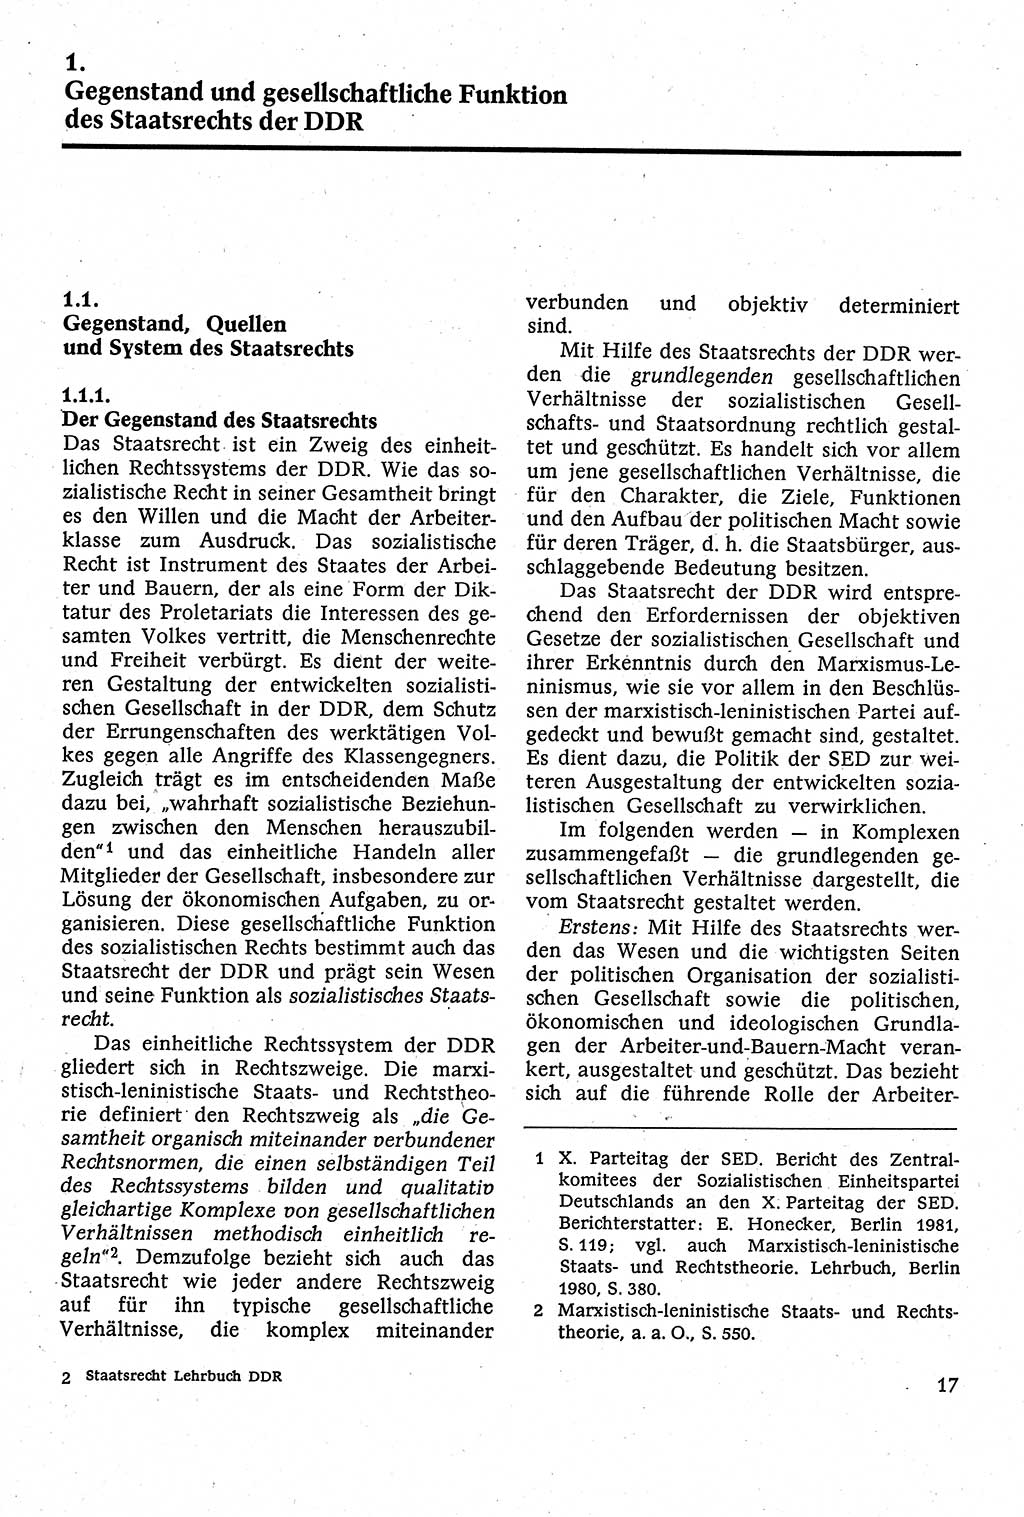 Staatsrecht der DDR [Deutsche Demokratische Republik (DDR)], Lehrbuch 1984, Seite 17 (St.-R. DDR Lb. 1984, S. 17)